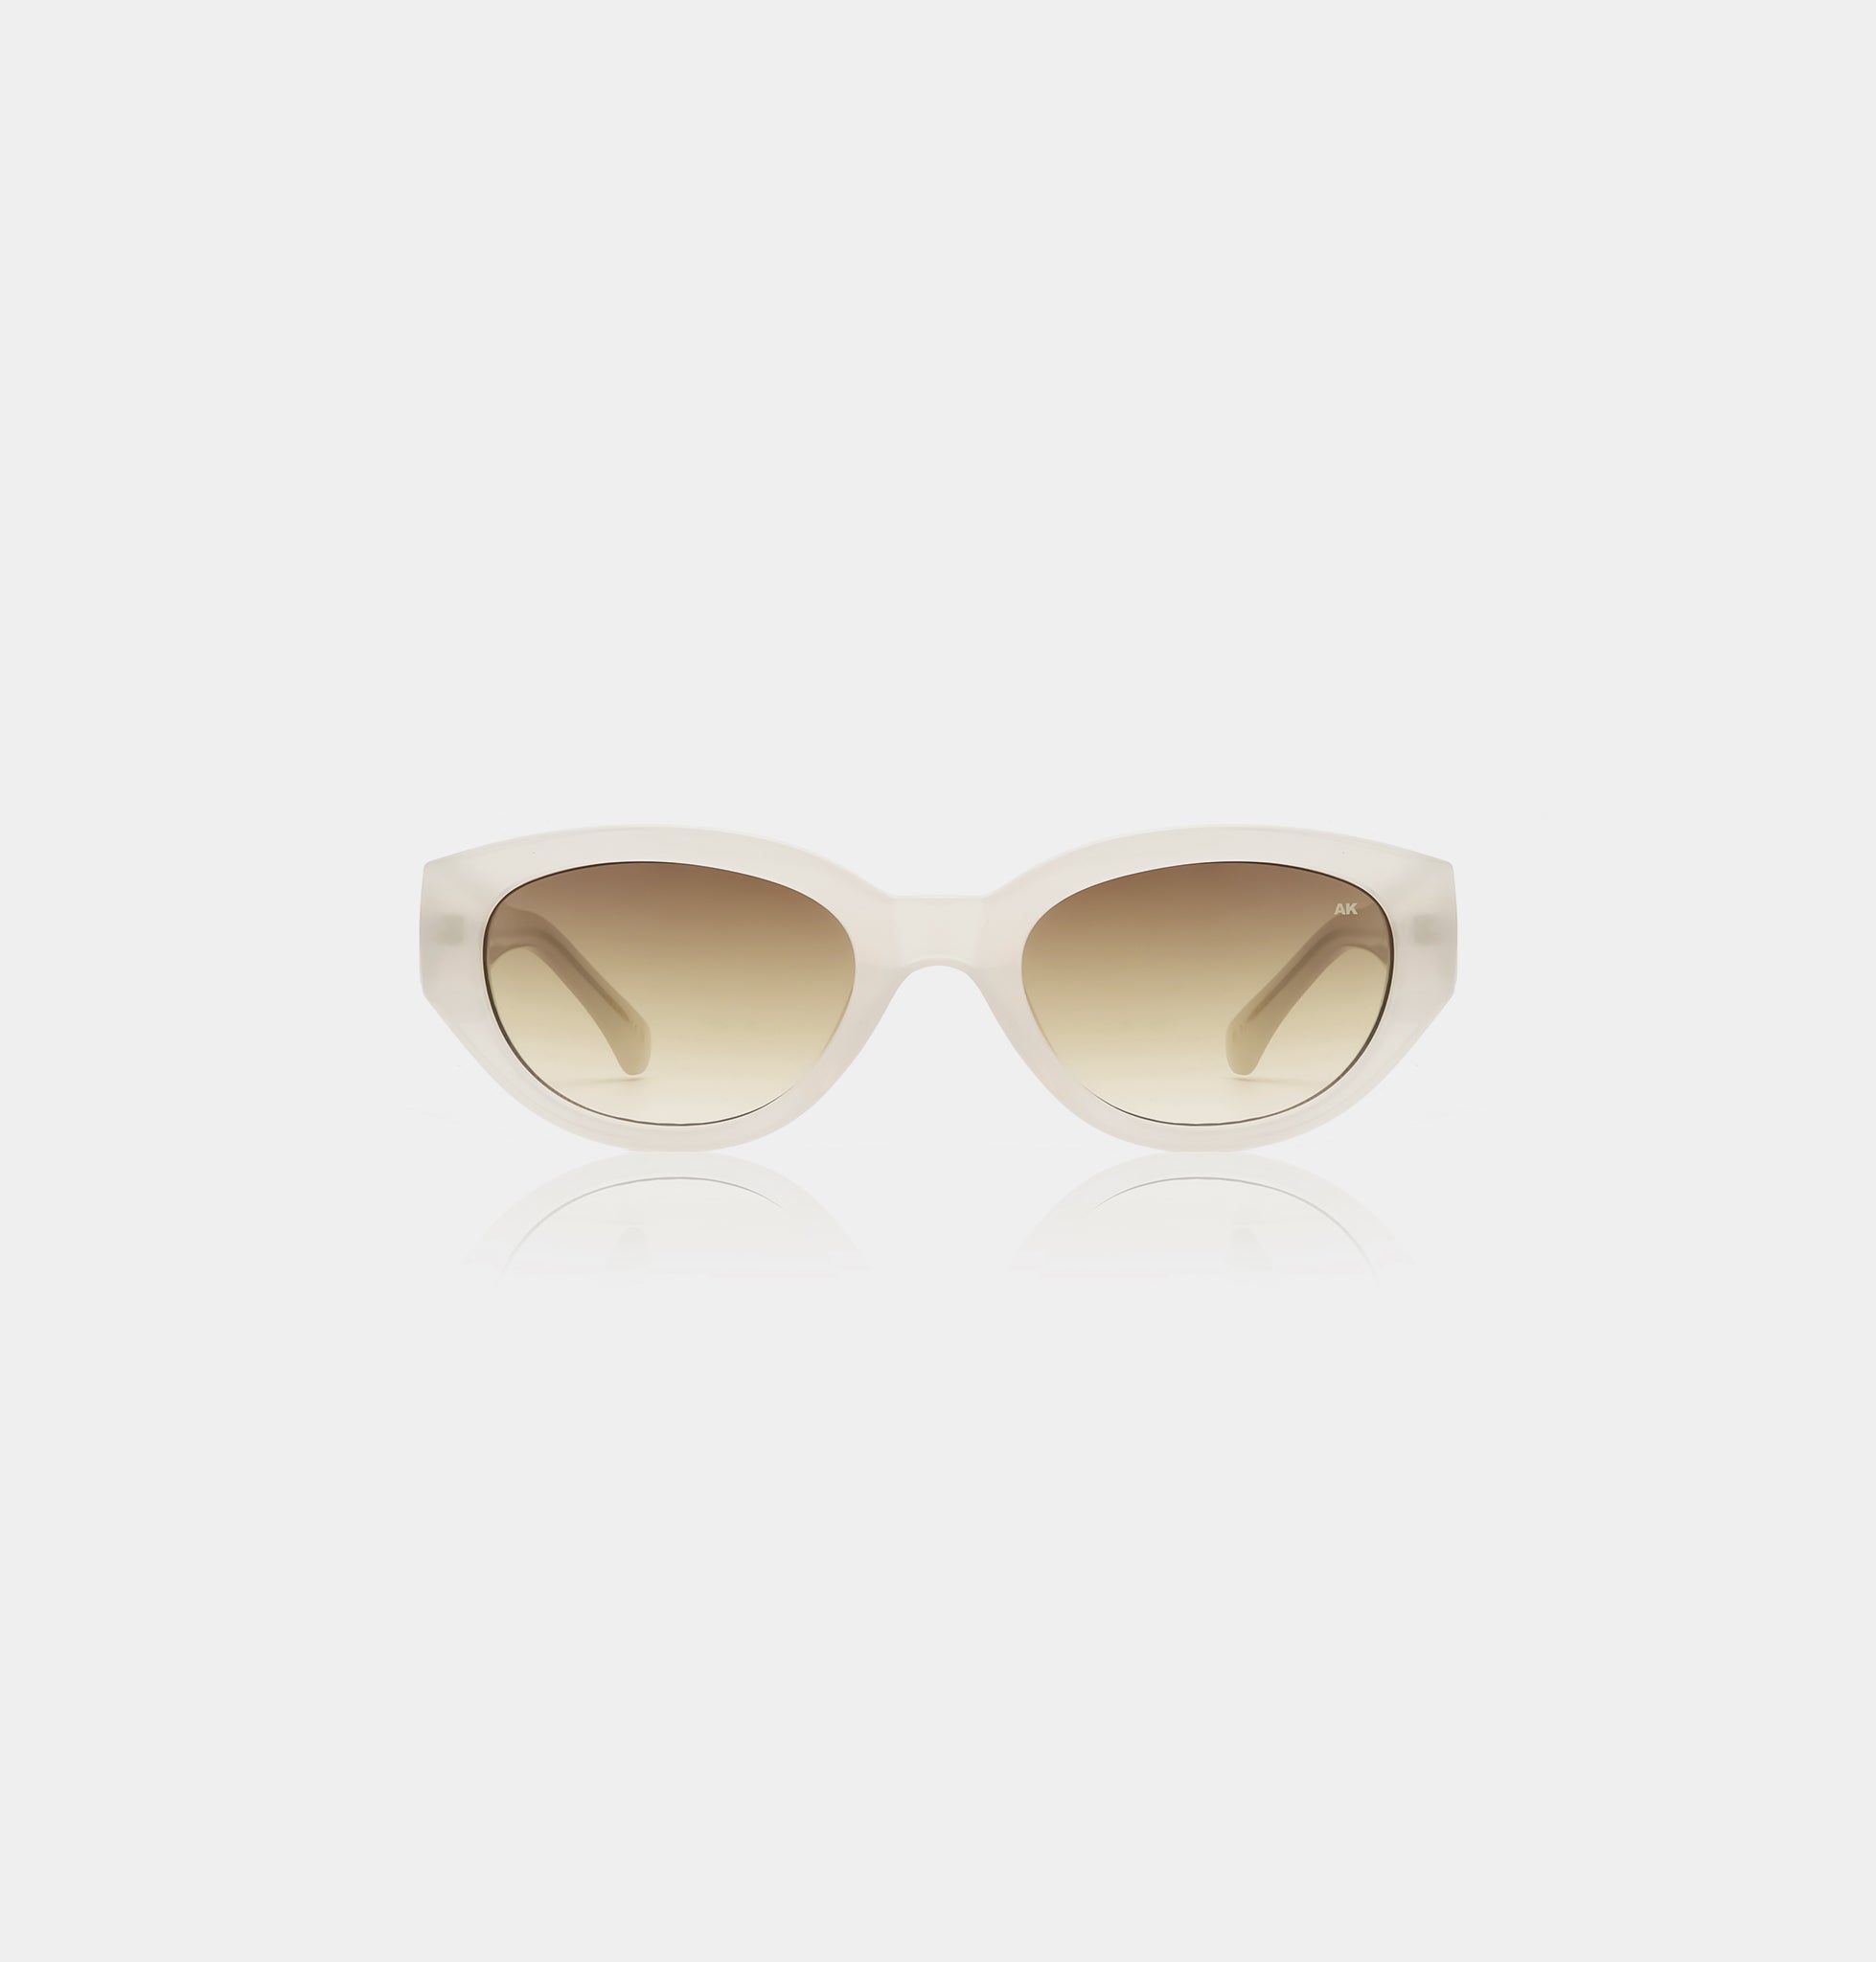 Winnie sunglasses in cream bone